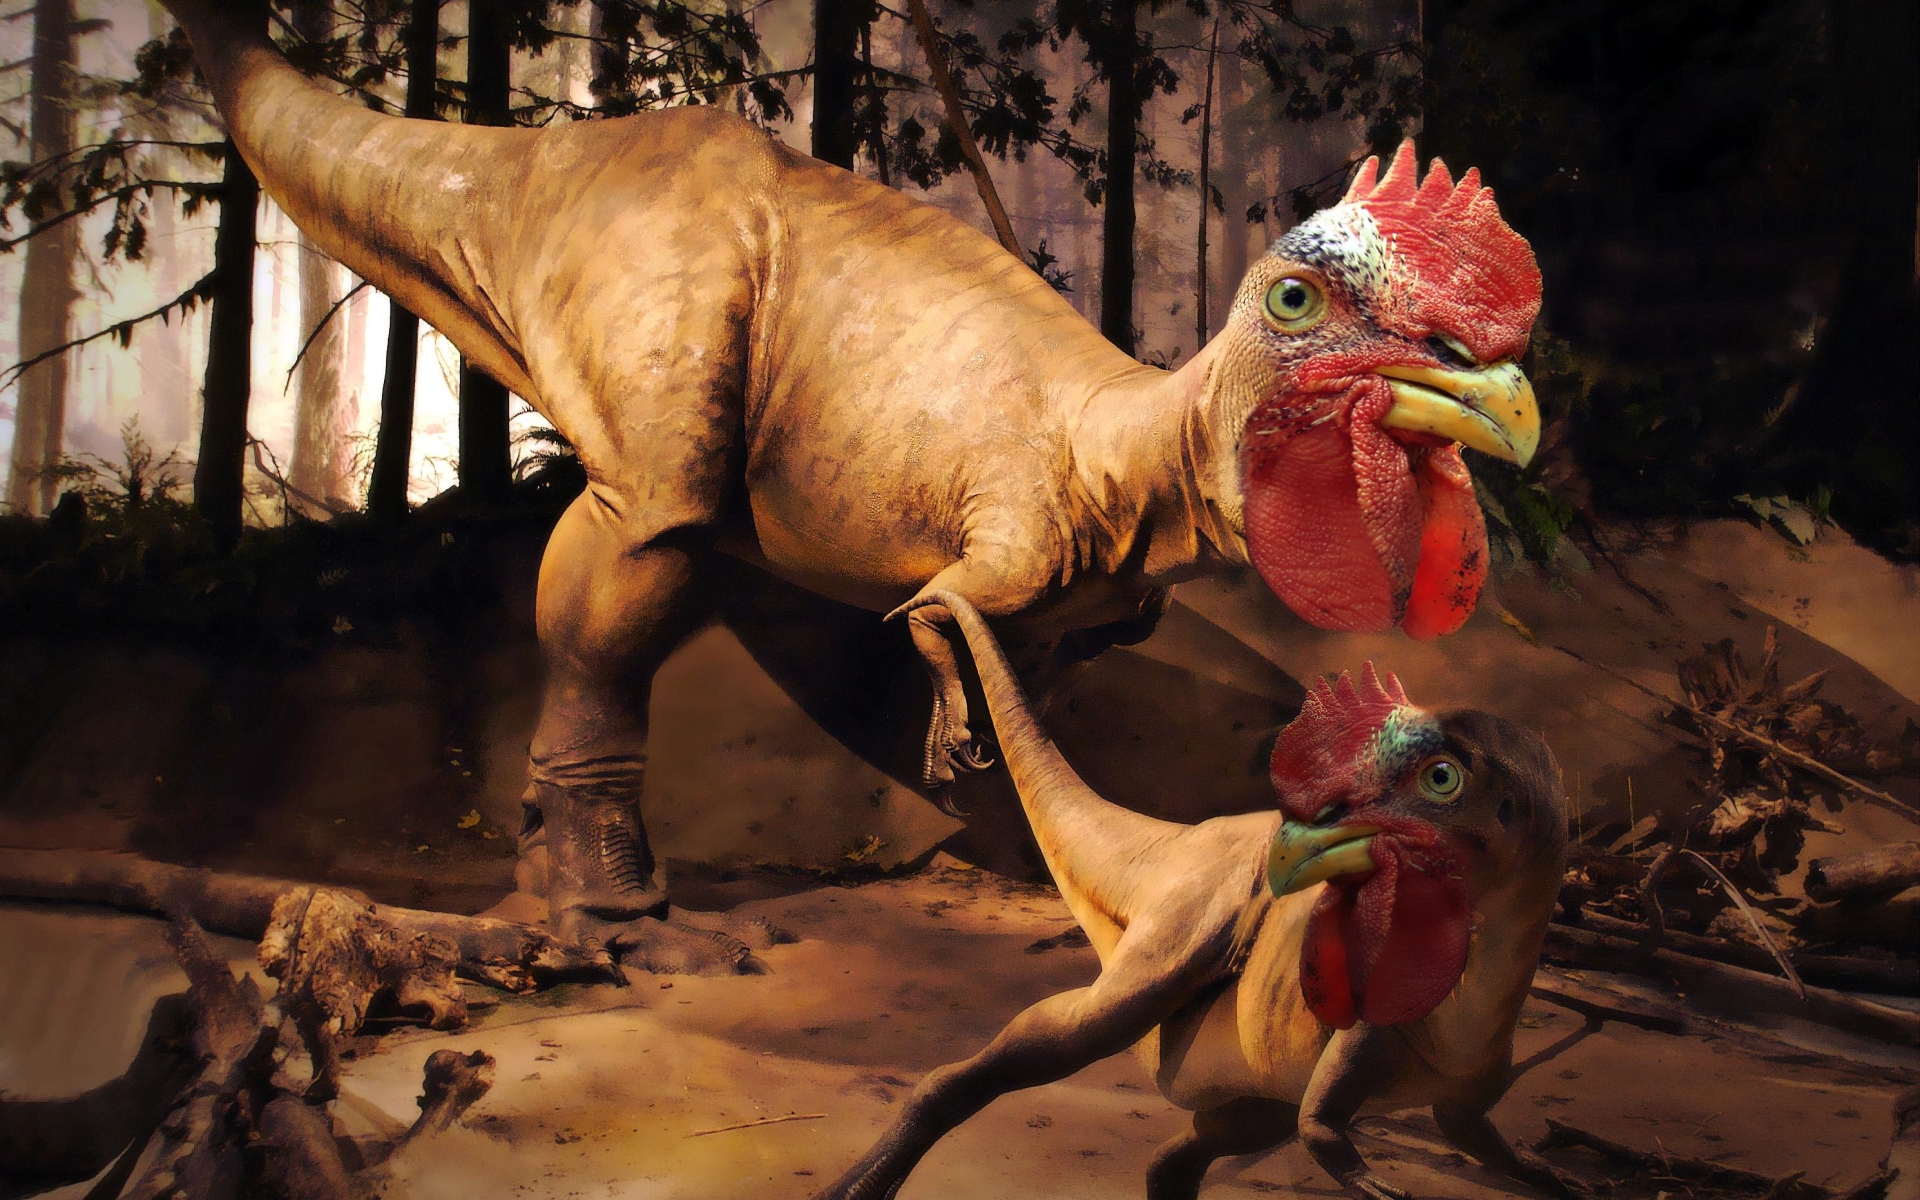 Скачать обои бесплатно Юмор, Животное, Динозавр картинка на рабочий стол ПК